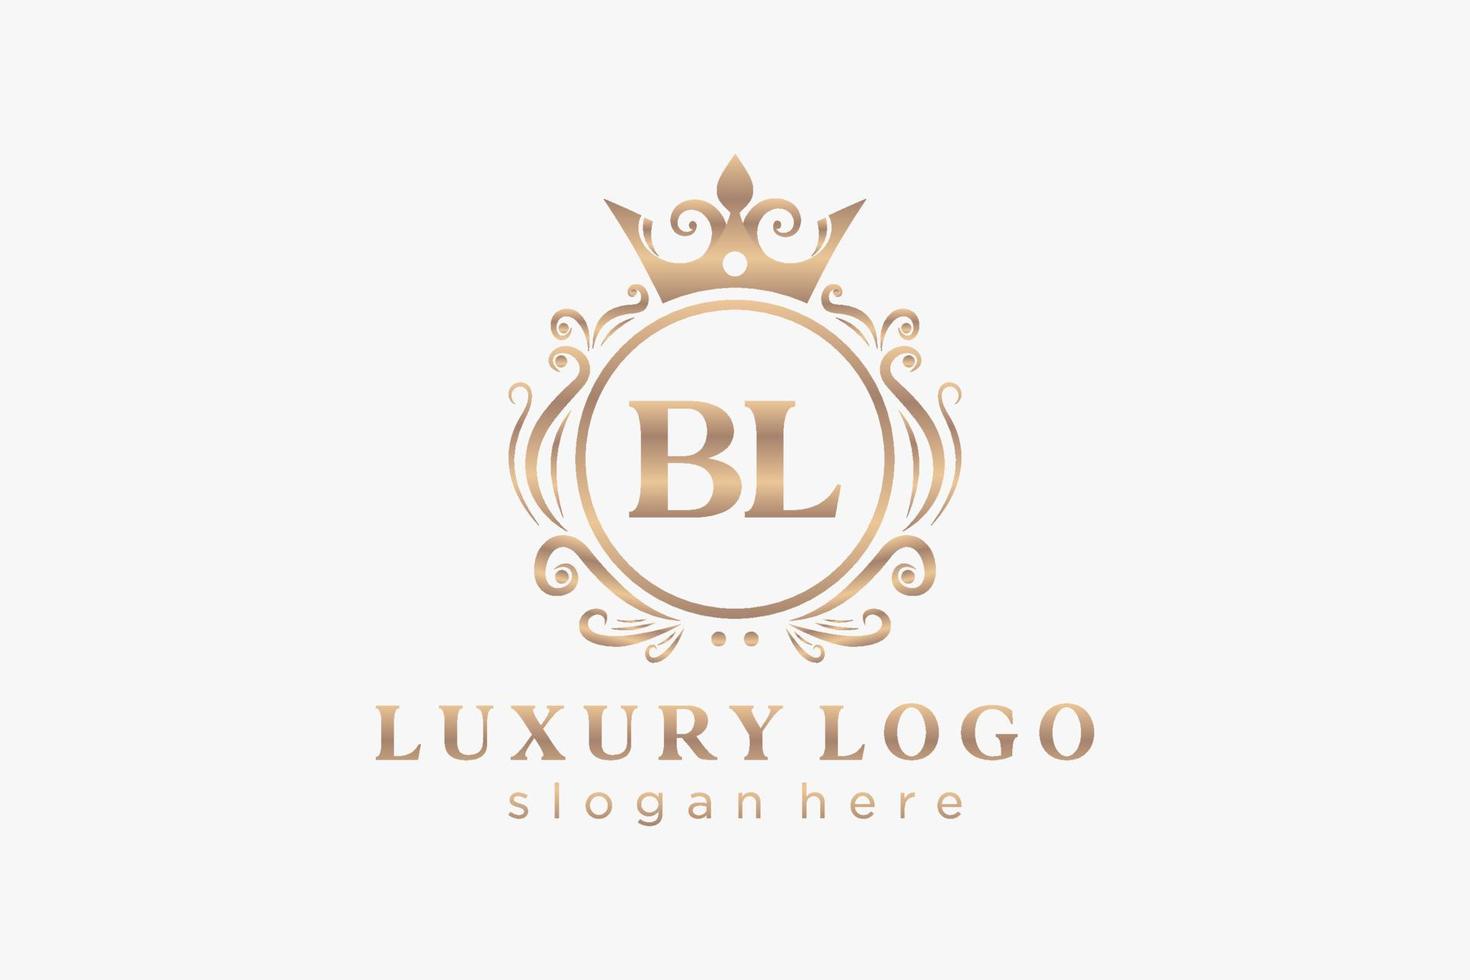 Royal Luxury Logo-Vorlage mit anfänglichem bl-Buchstaben in Vektorgrafiken für Restaurant, Lizenzgebühren, Boutique, Café, Hotel, Heraldik, Schmuck, Mode und andere Vektorillustrationen. vektor